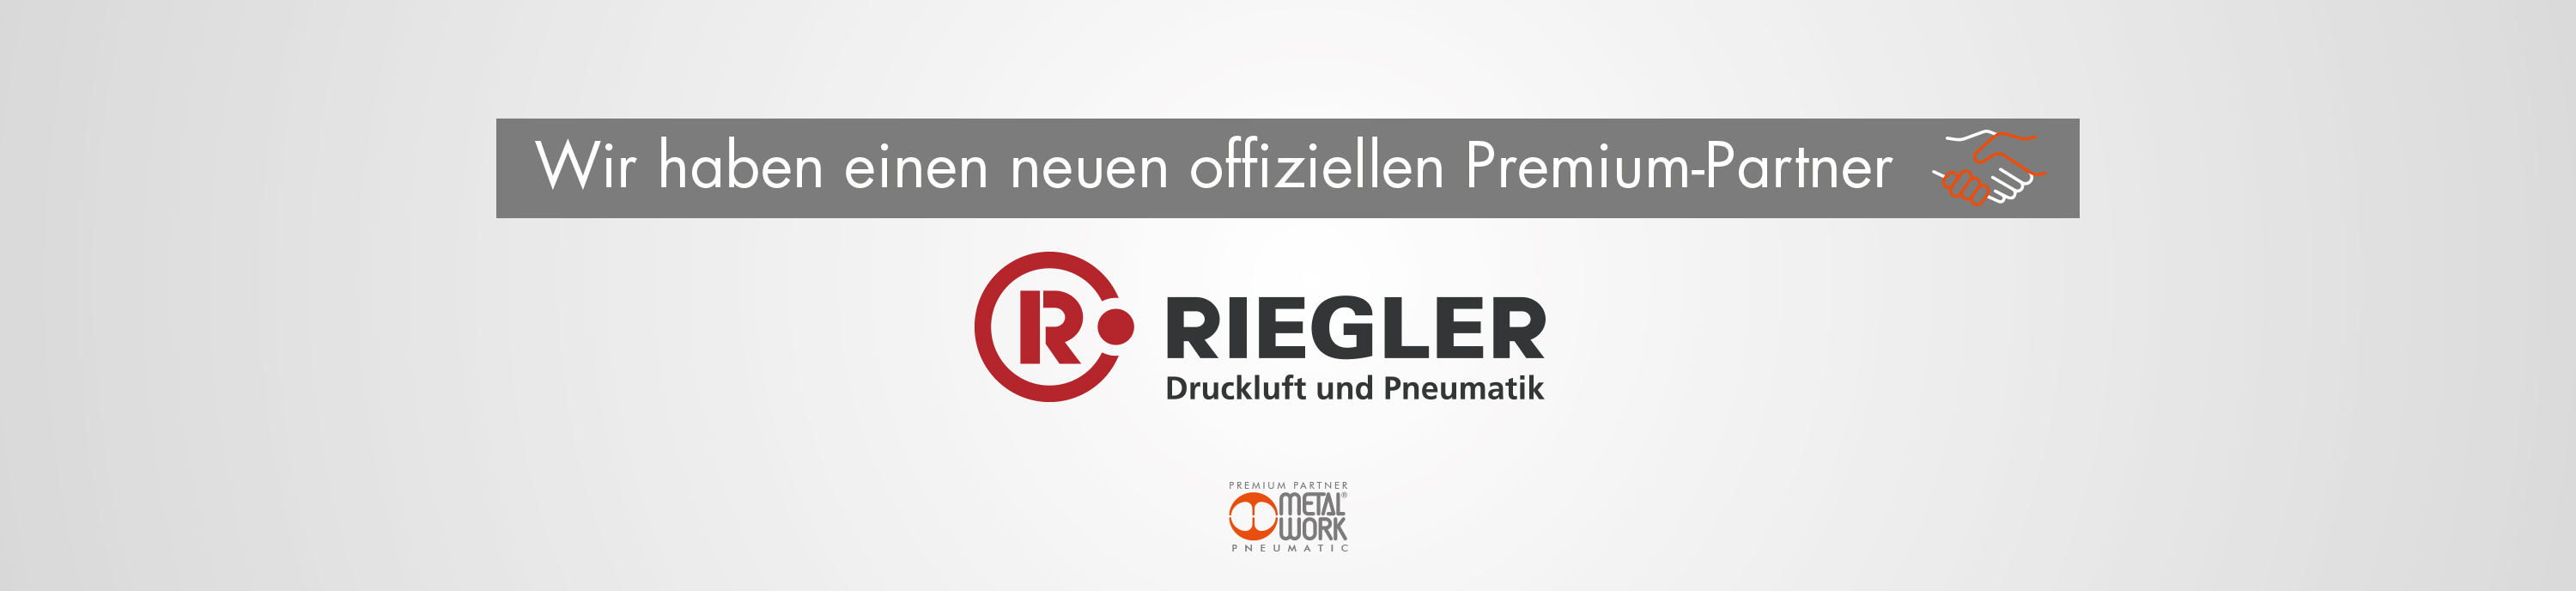 RIEGLER & Co. KG IST OFFIZIELLER PREMIUMPARTNER VON METAL WORK PNEUMATIC